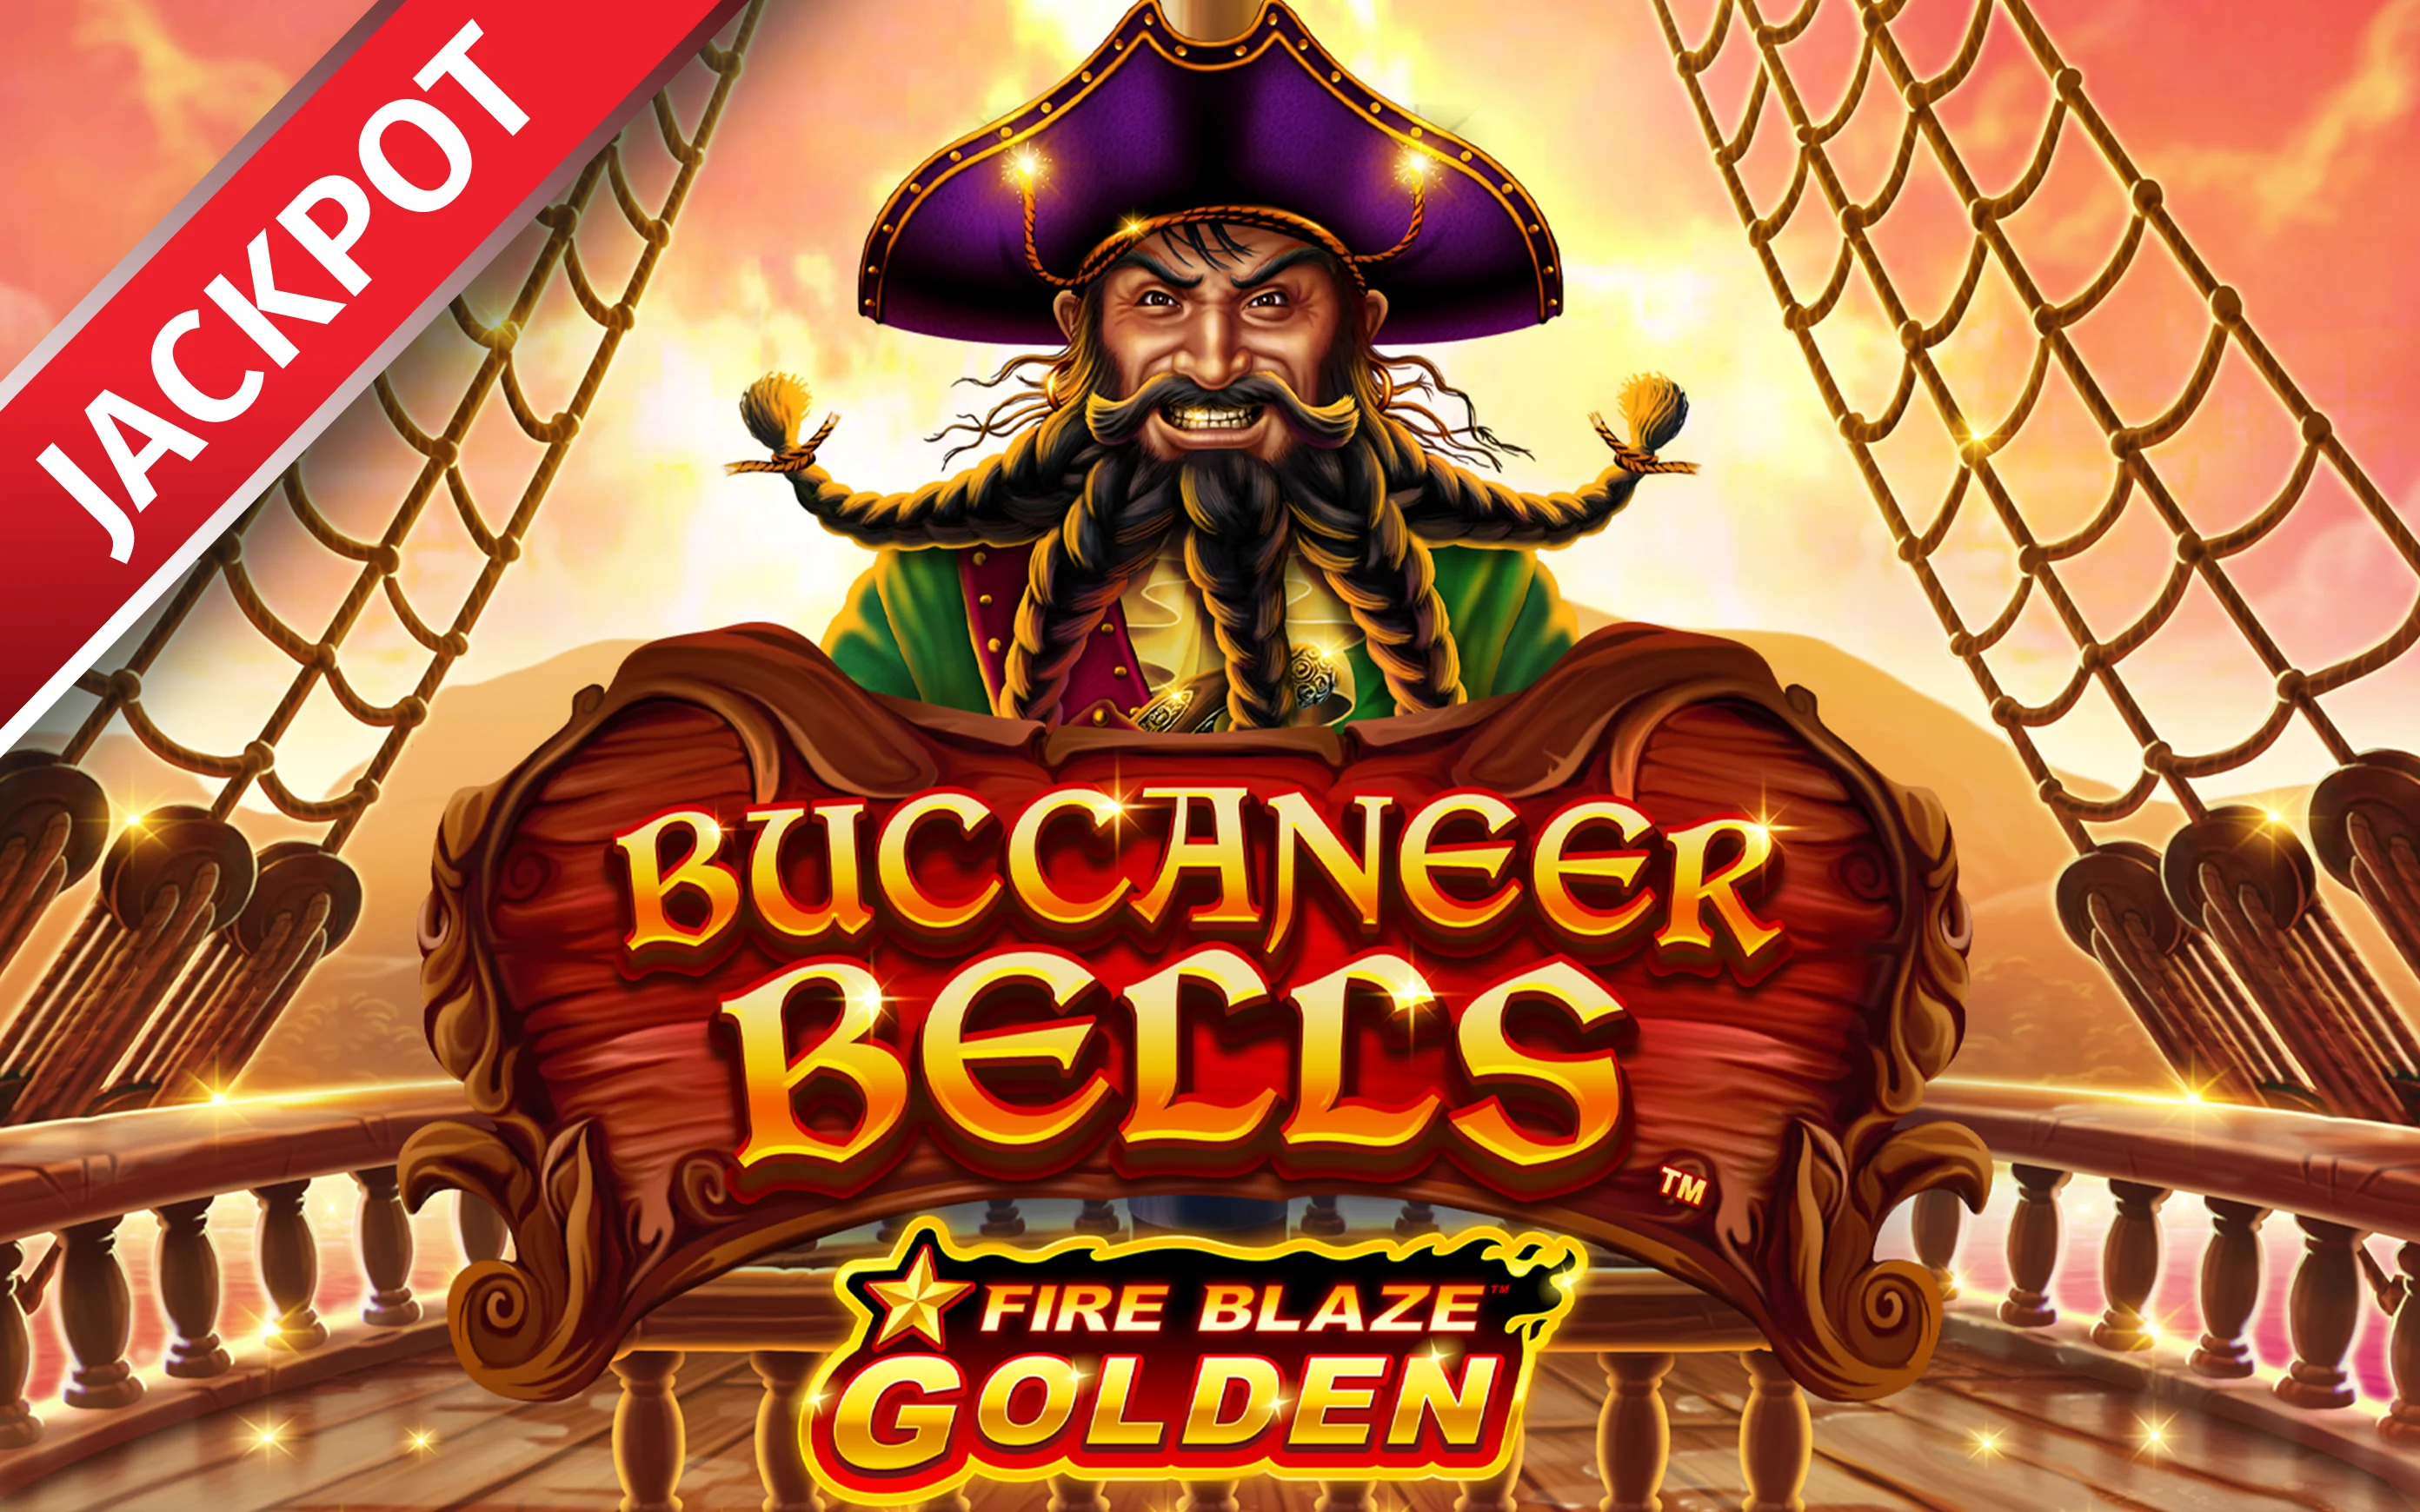 Speel Fire Blaze Golden Buccaneer Bells op Starcasino.be online casino